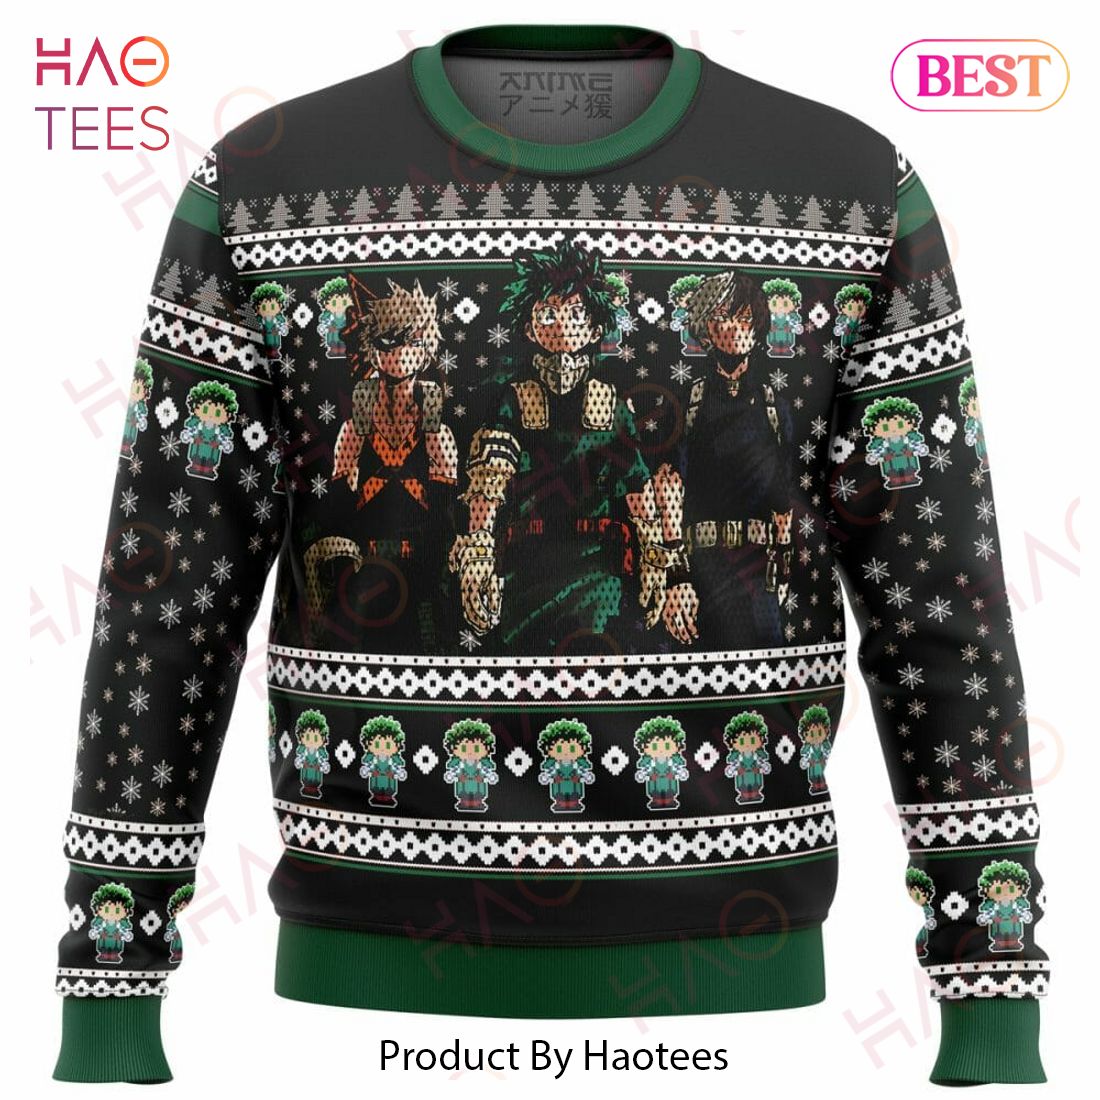 My Hero Academia top 3 Ugly Christmas Sweater